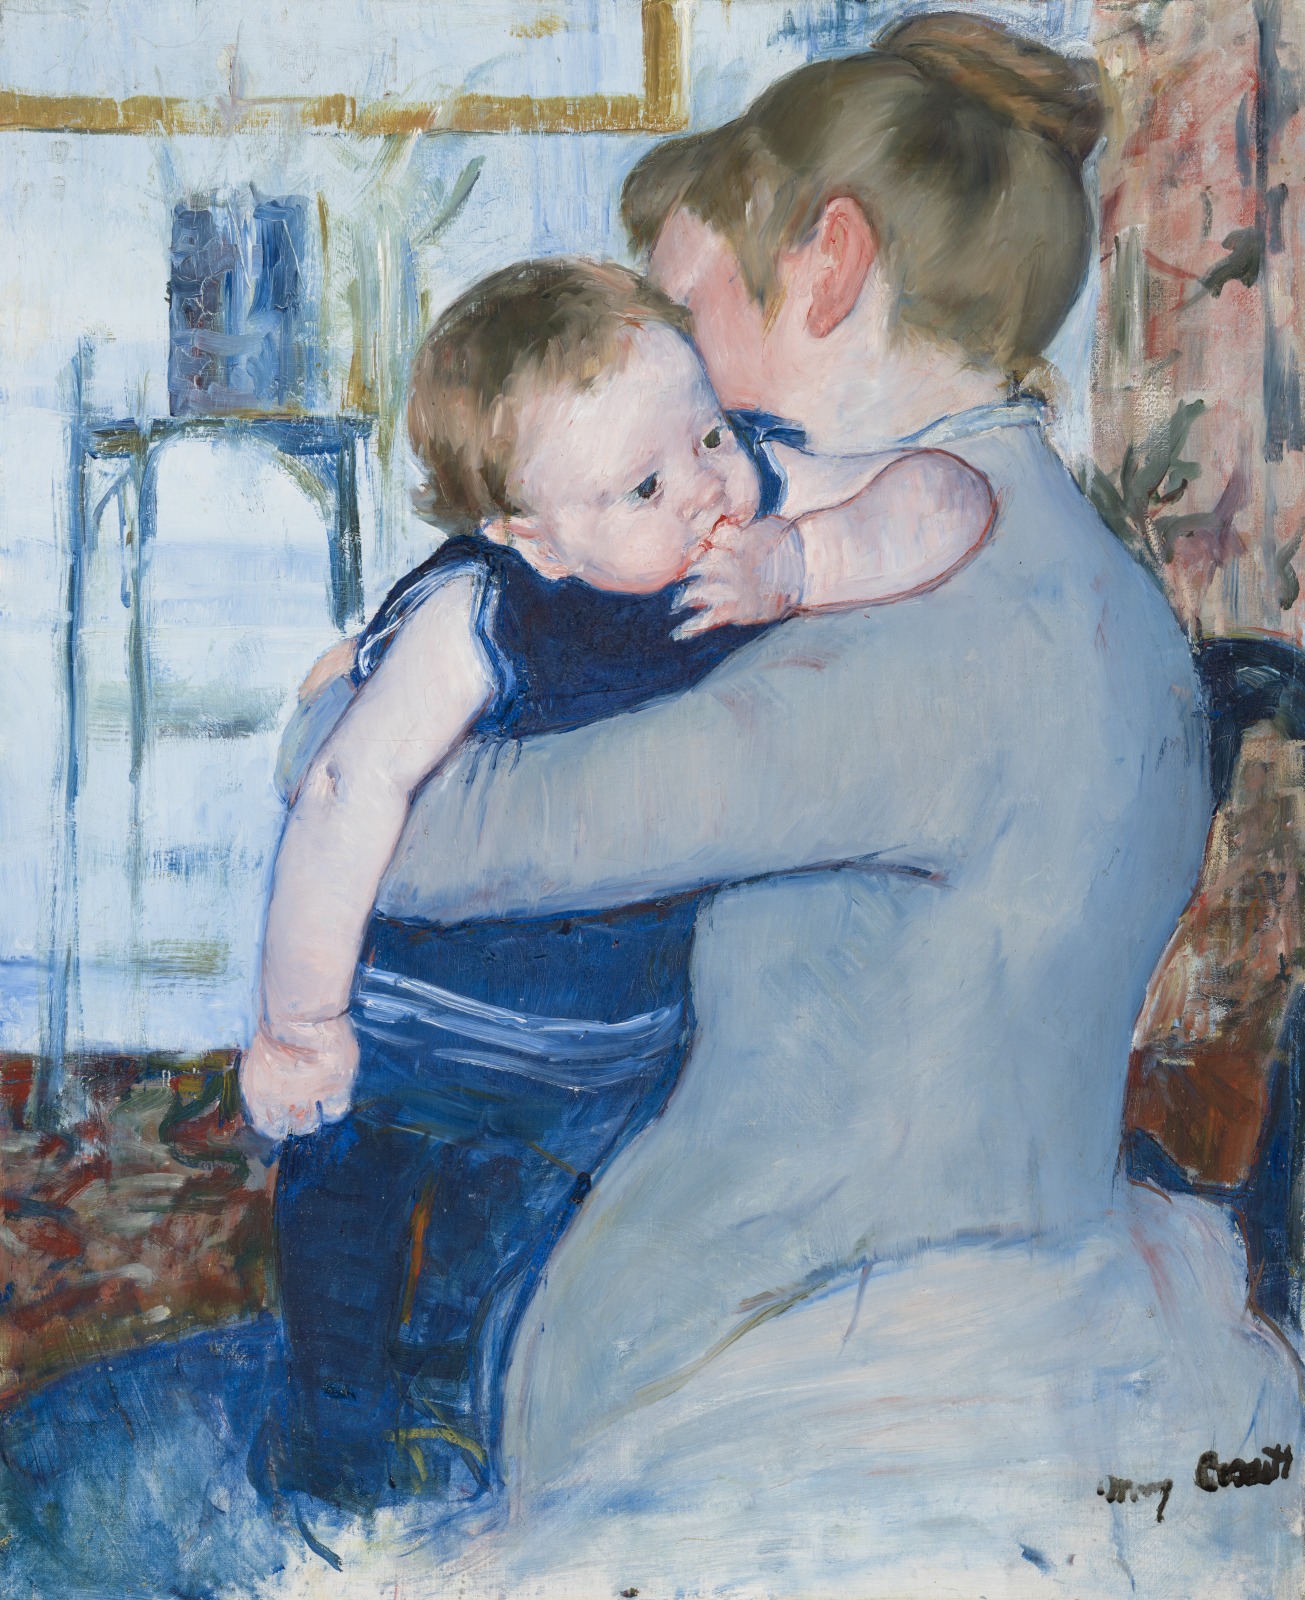 Baby in Dark Blue Suit, Looking Over His Mother's Shoulder